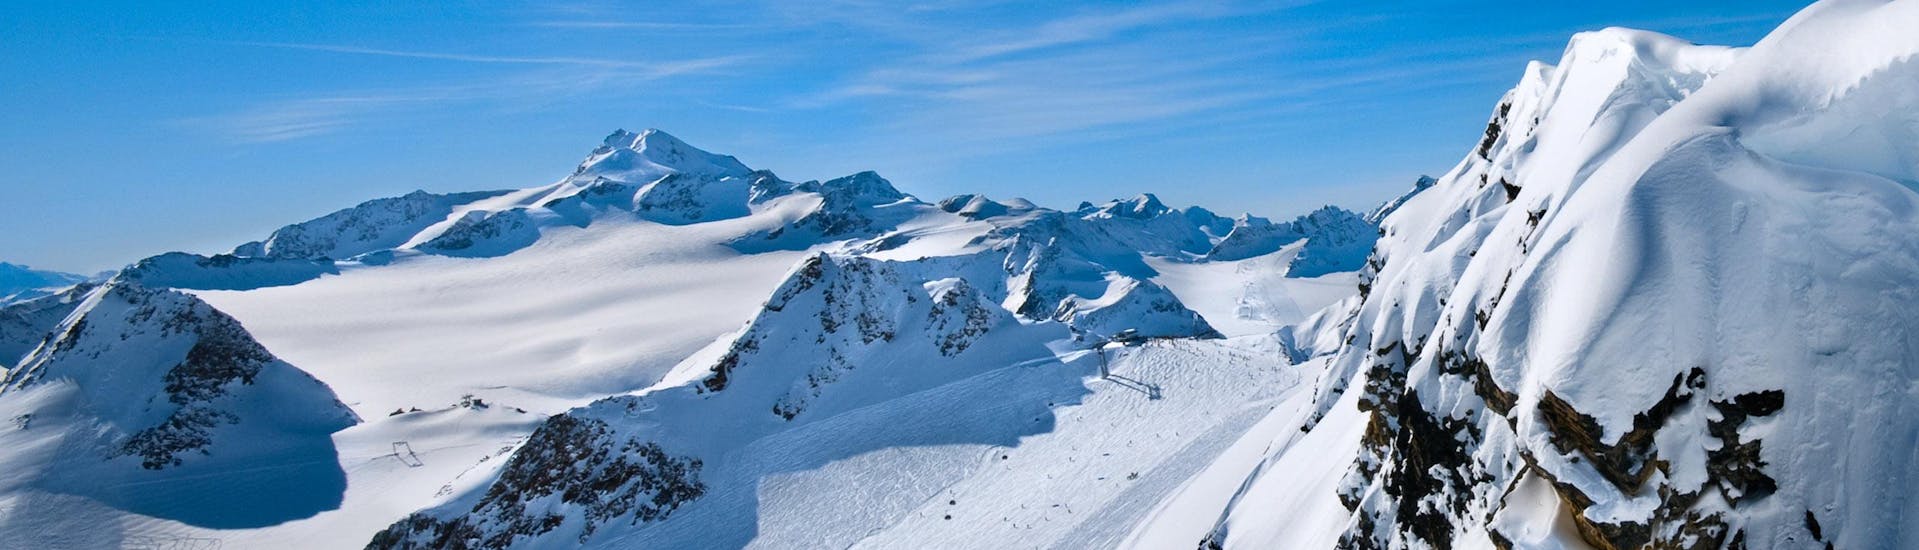 Ausblick auf die sonnige Berglandschaft beim Skifahren lernen mit einer Skischule im Skigebiet Tauplitzalm.